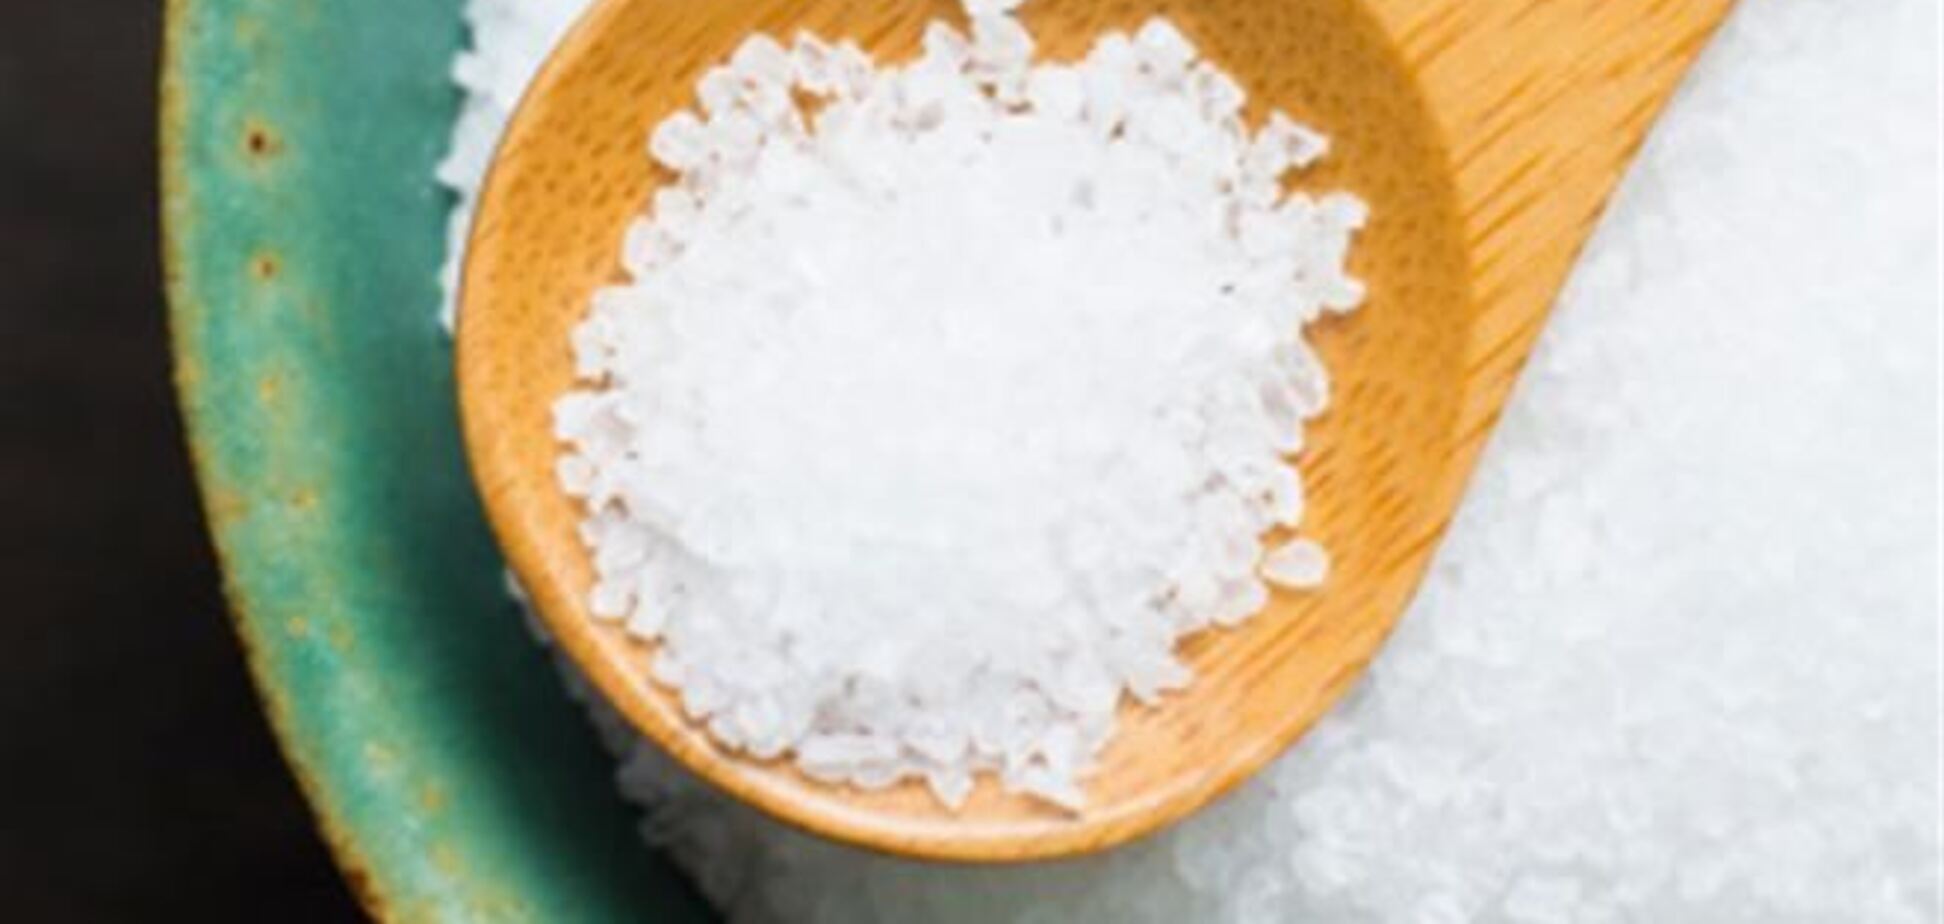 9 полезных рецептов на основе соли